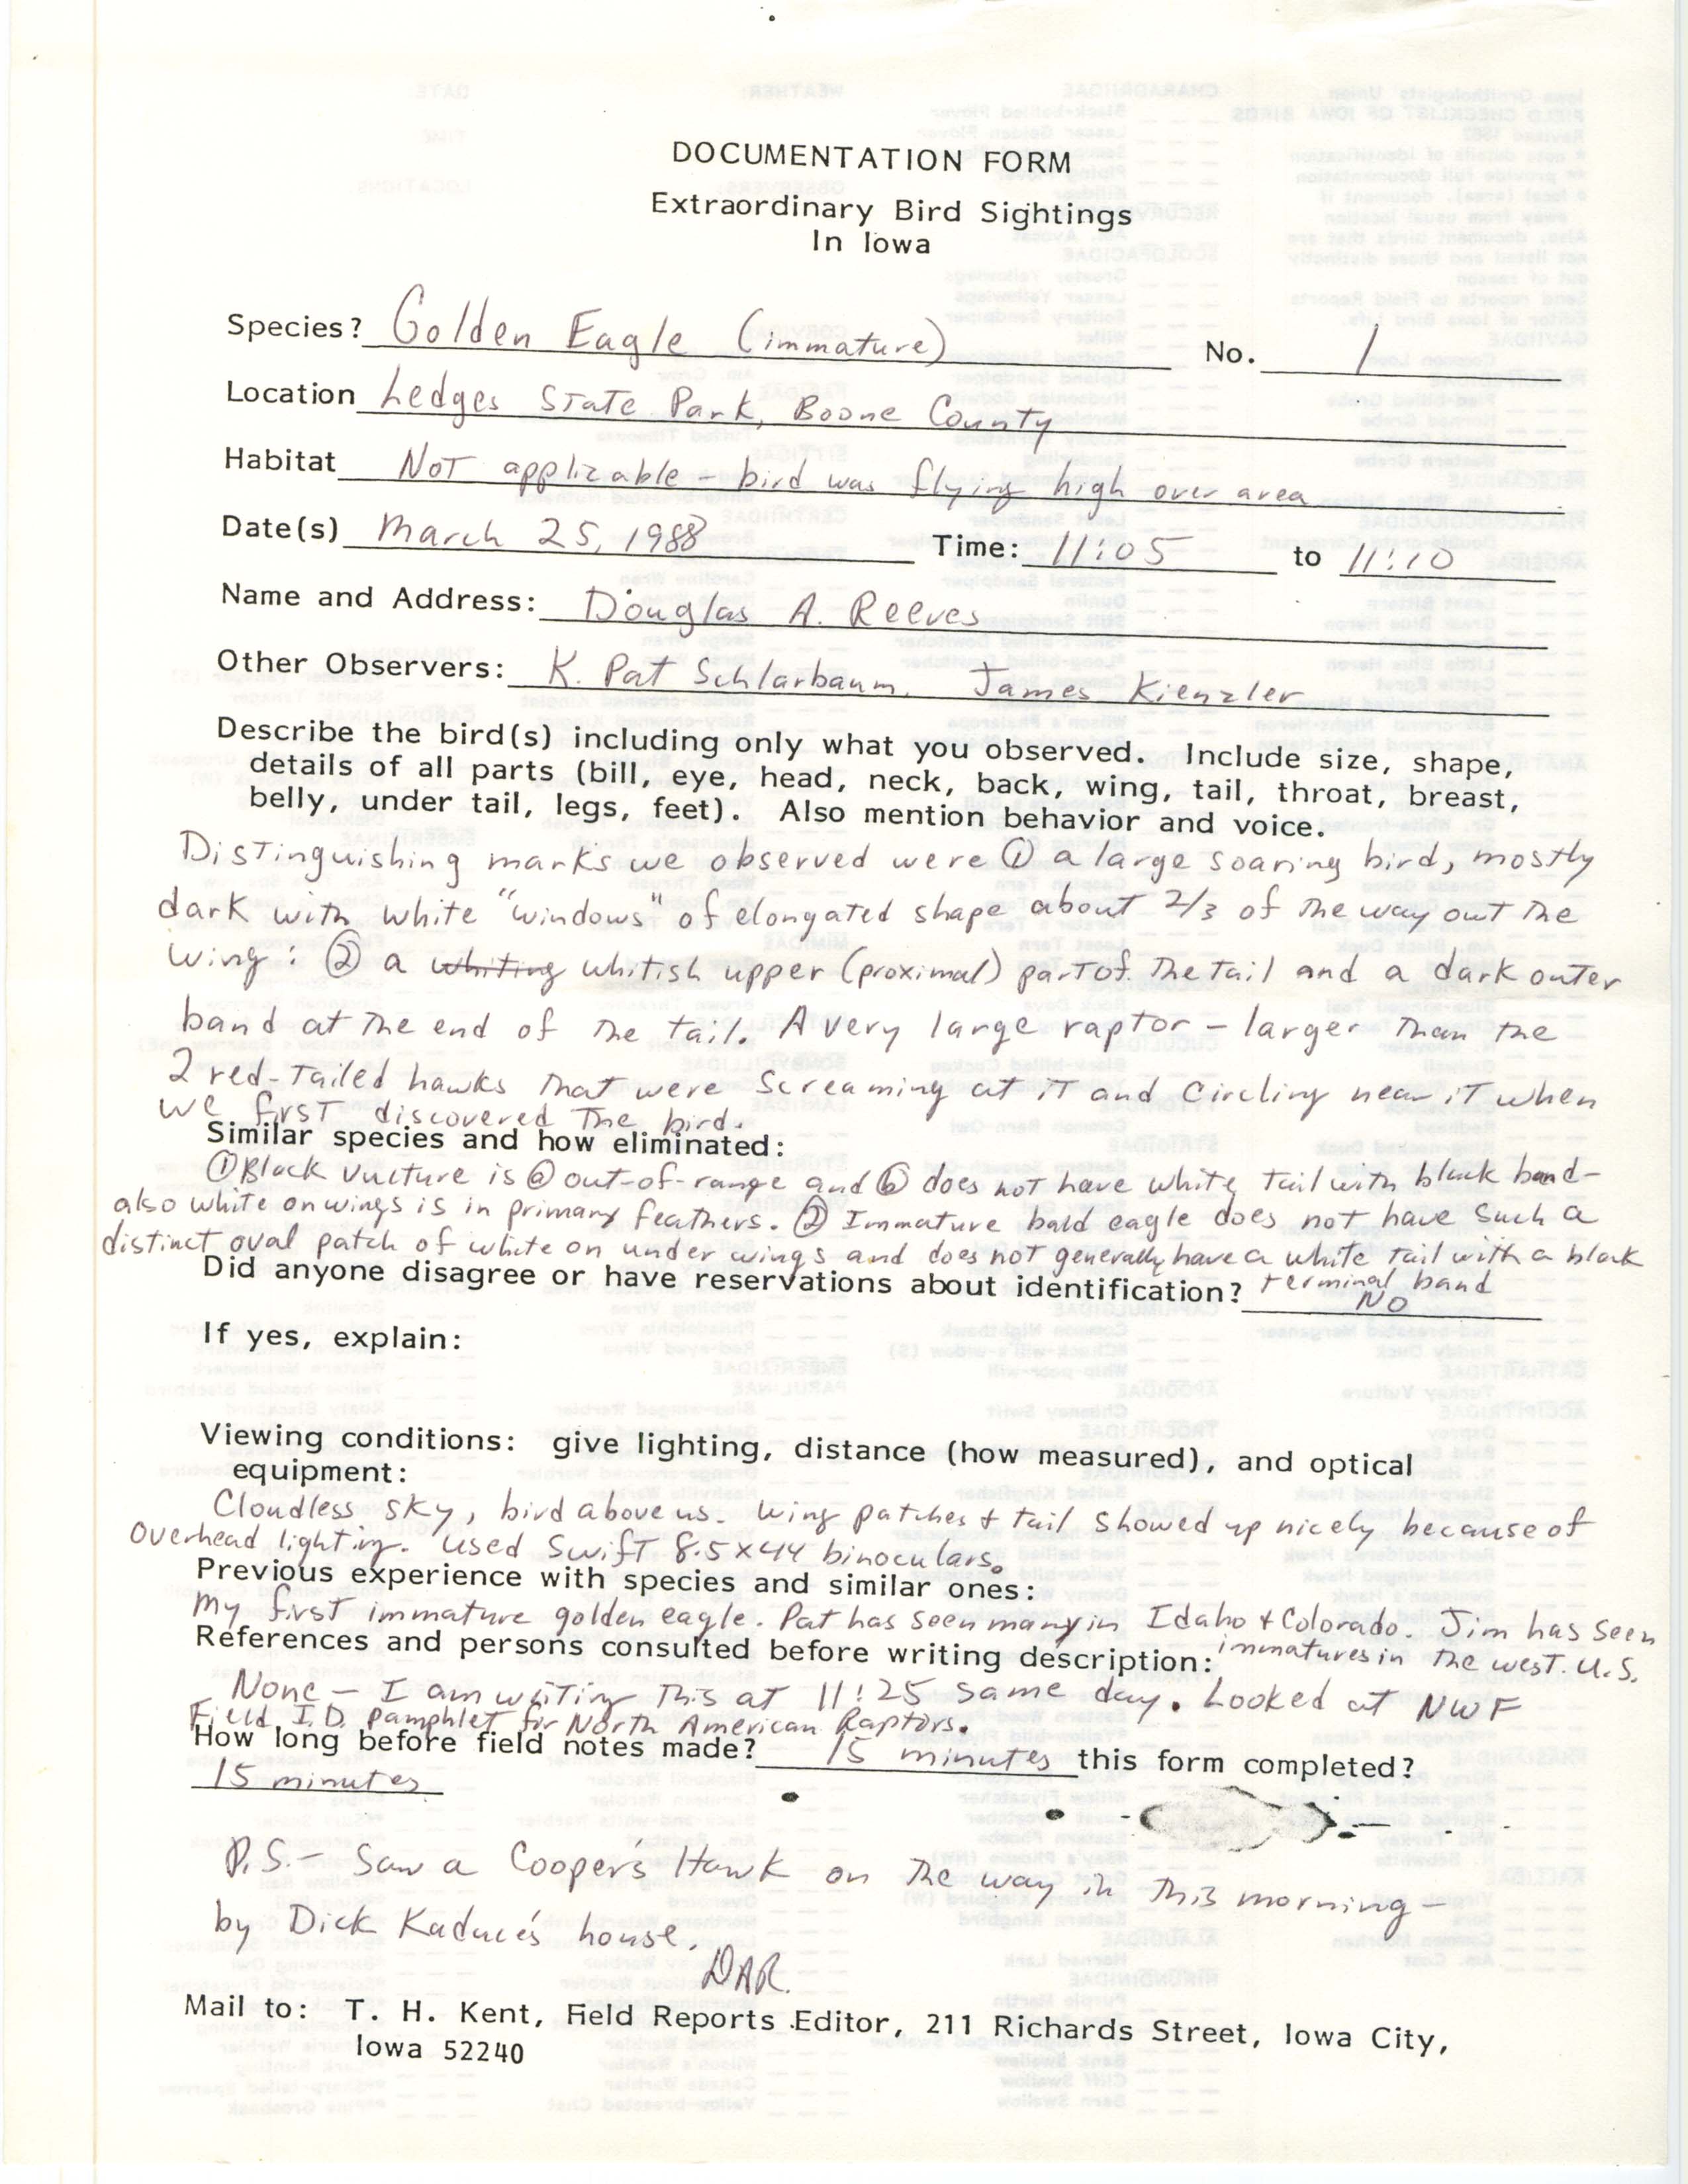 Rare bird documentation form for Golden Eagle at Ledges State Park, 1988